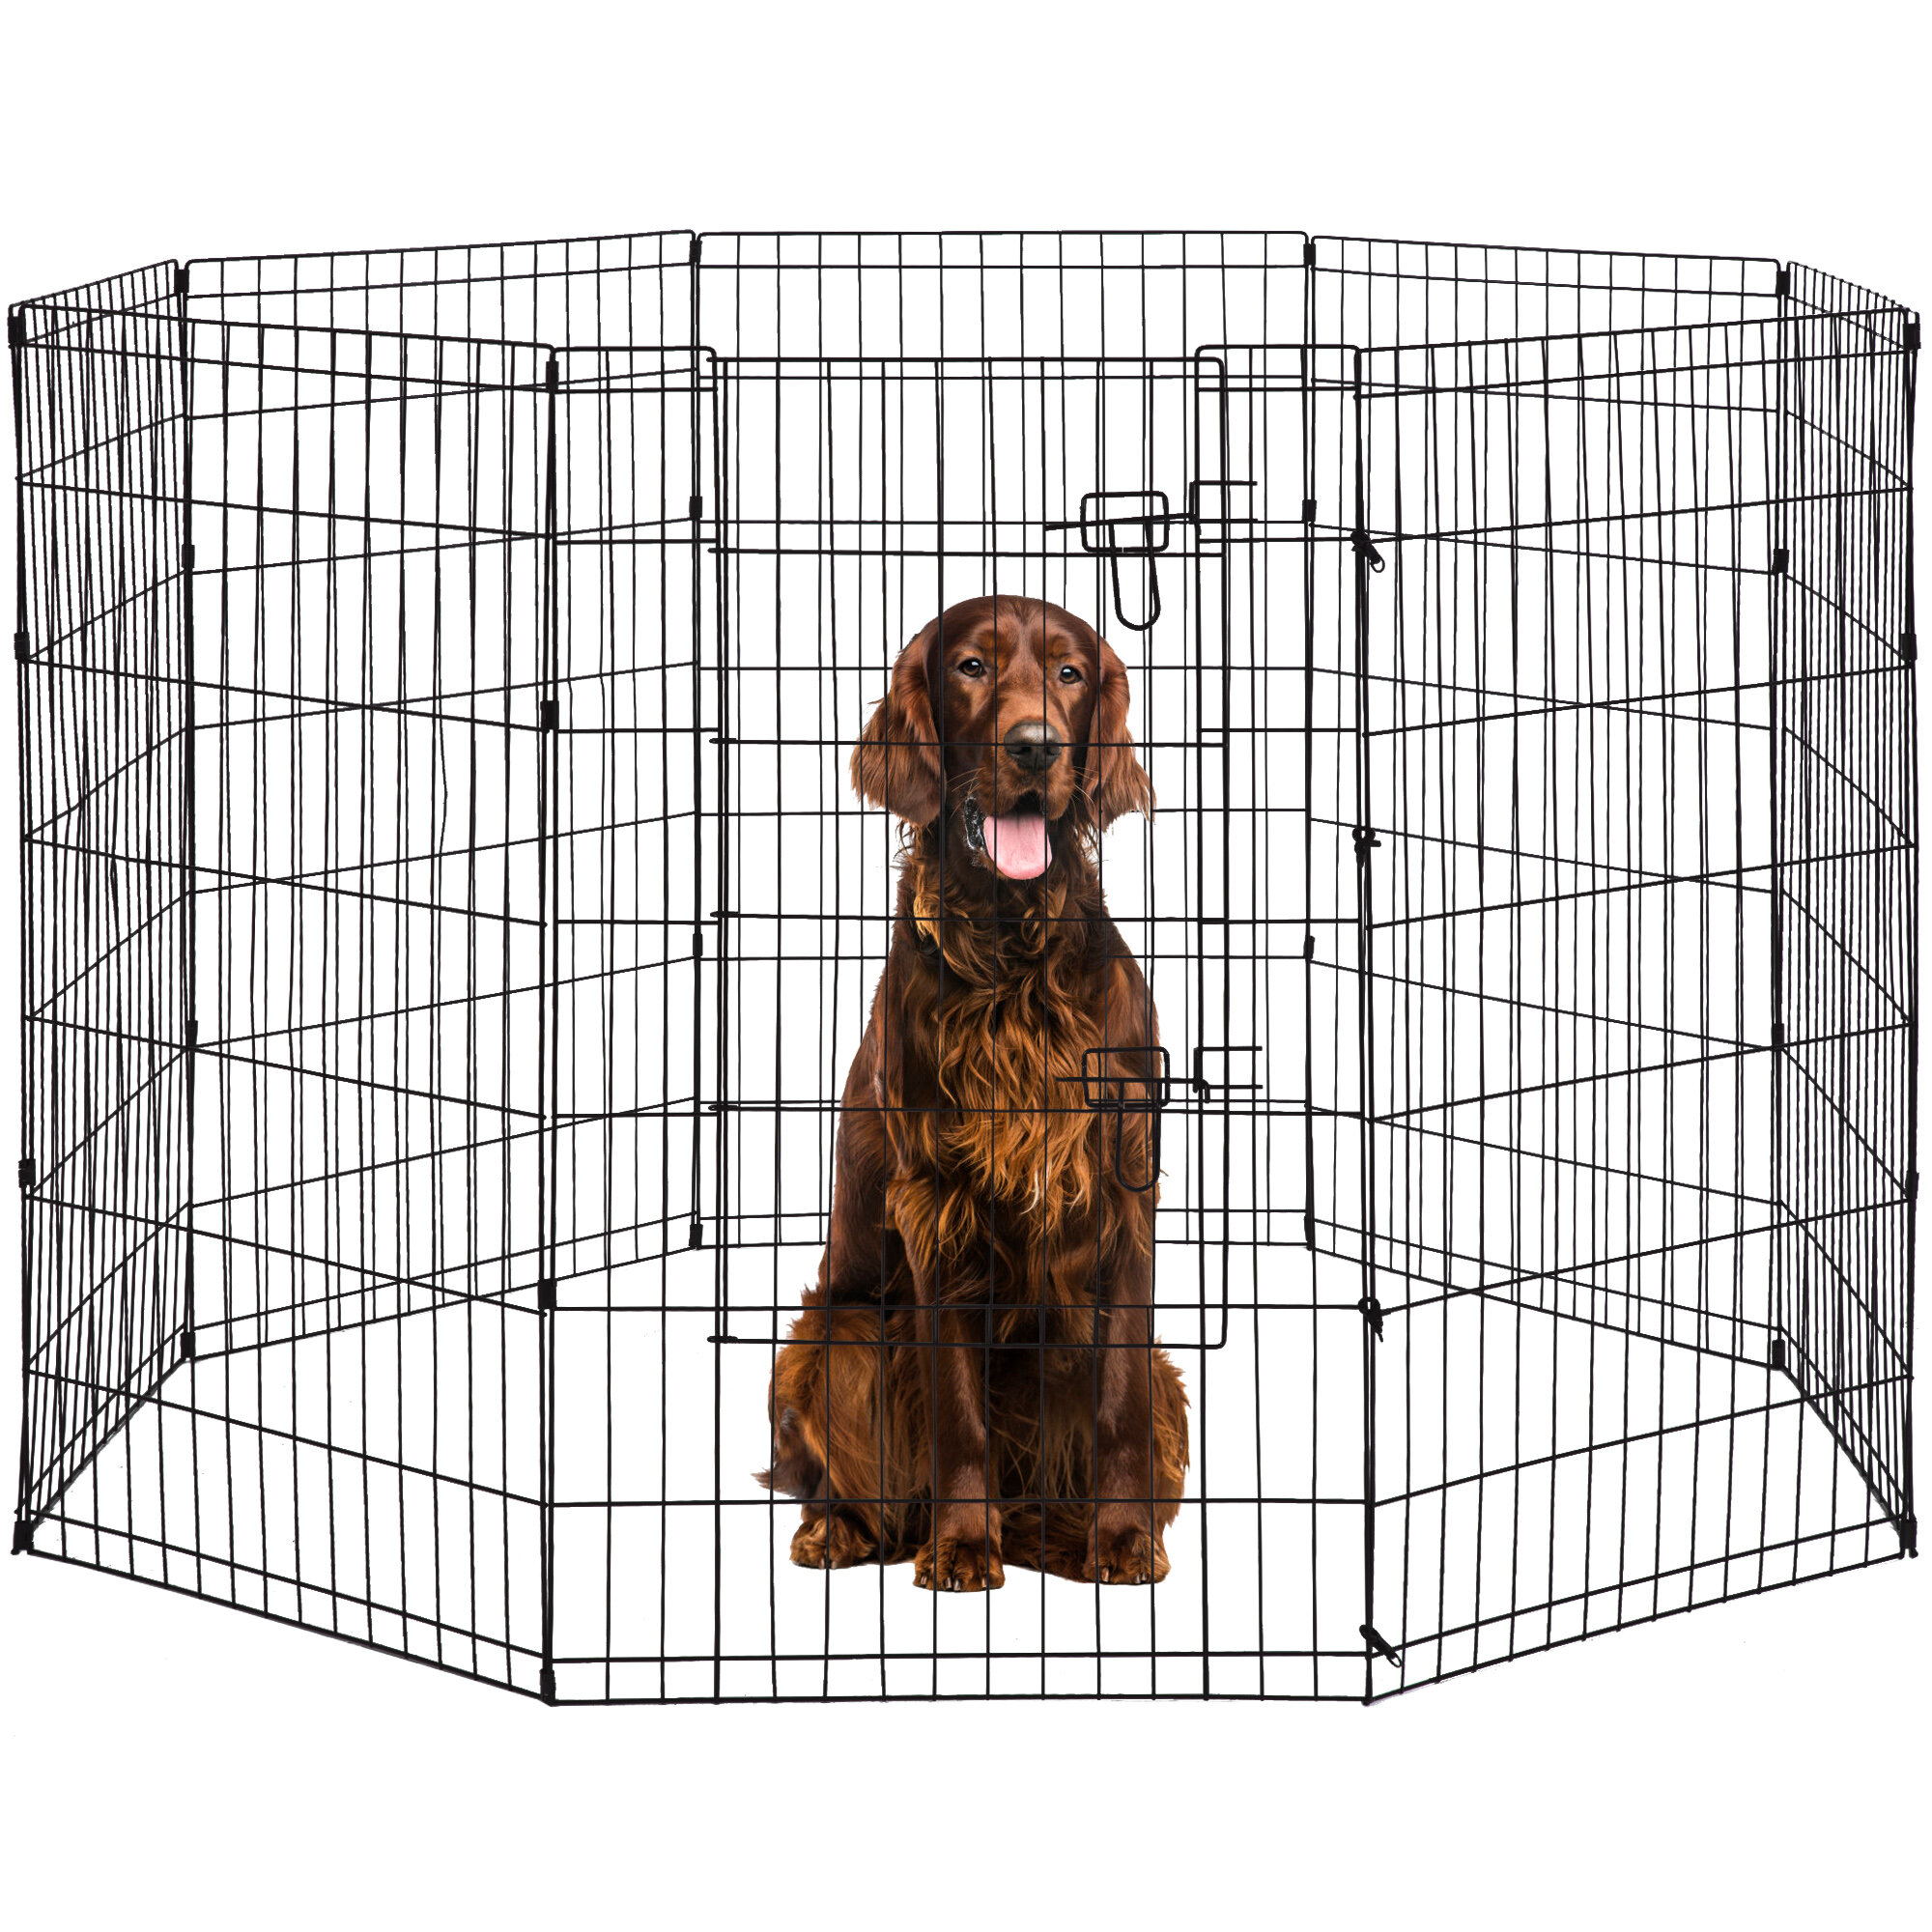  Dog Fence 16 Panels 32 H Pet Playpen Metal Outdoor